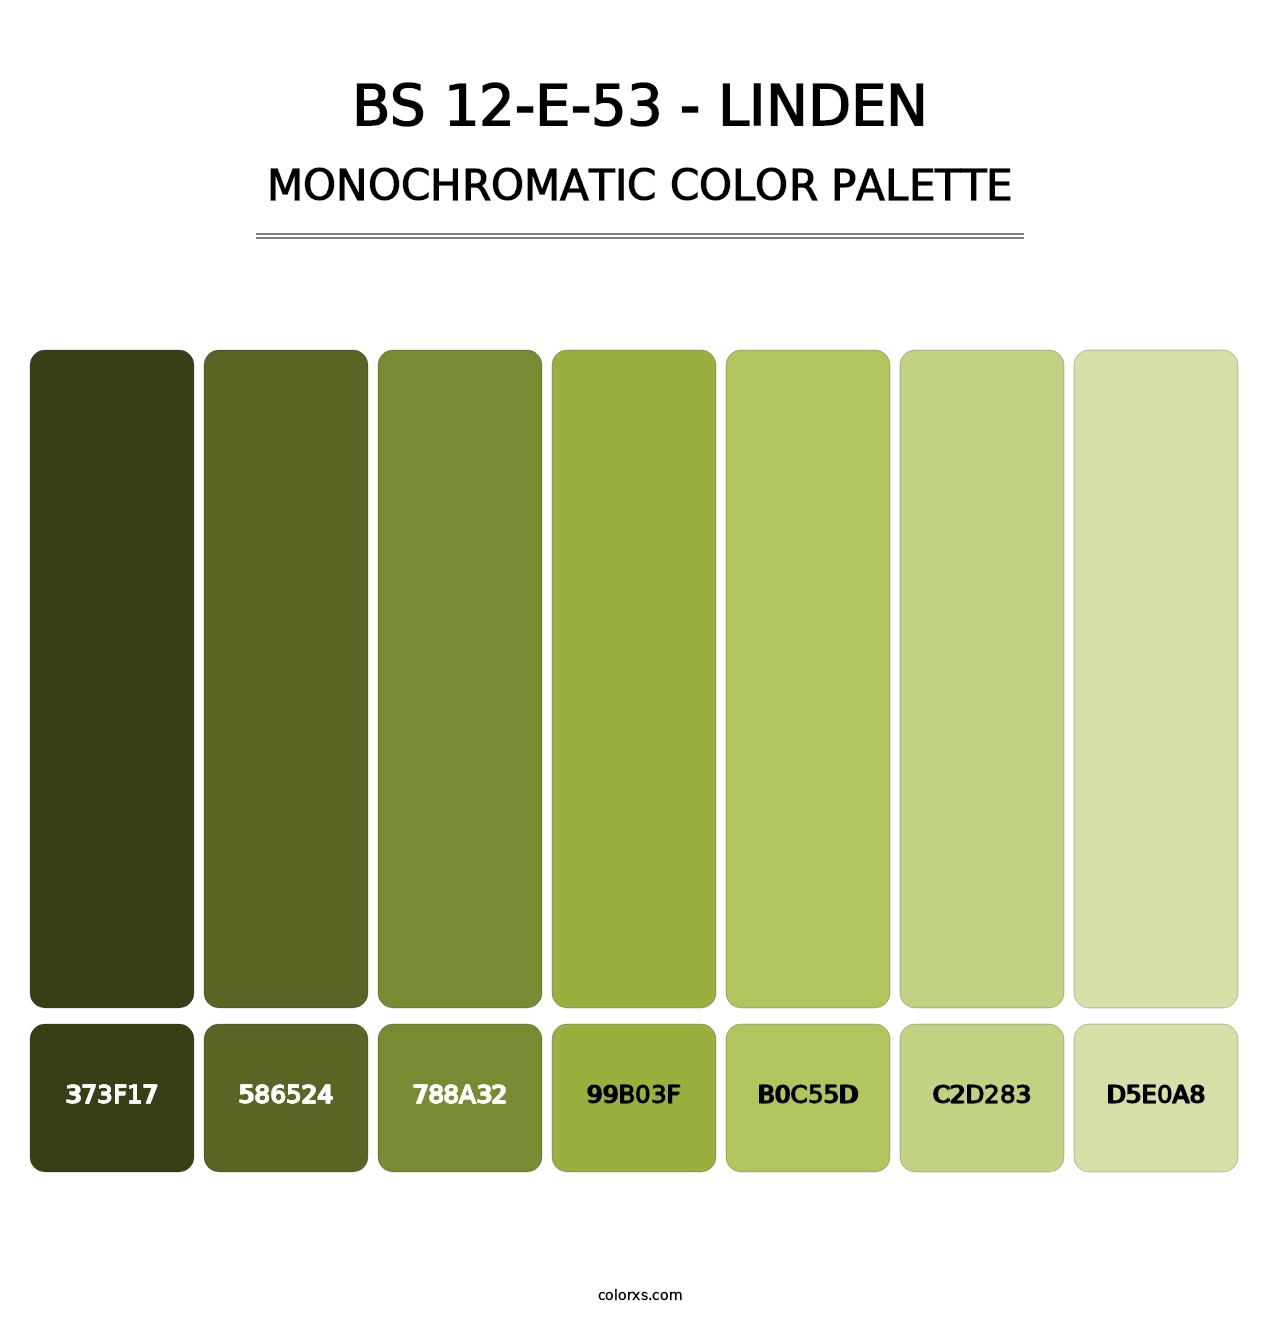 BS 12-E-53 - Linden - Monochromatic Color Palette